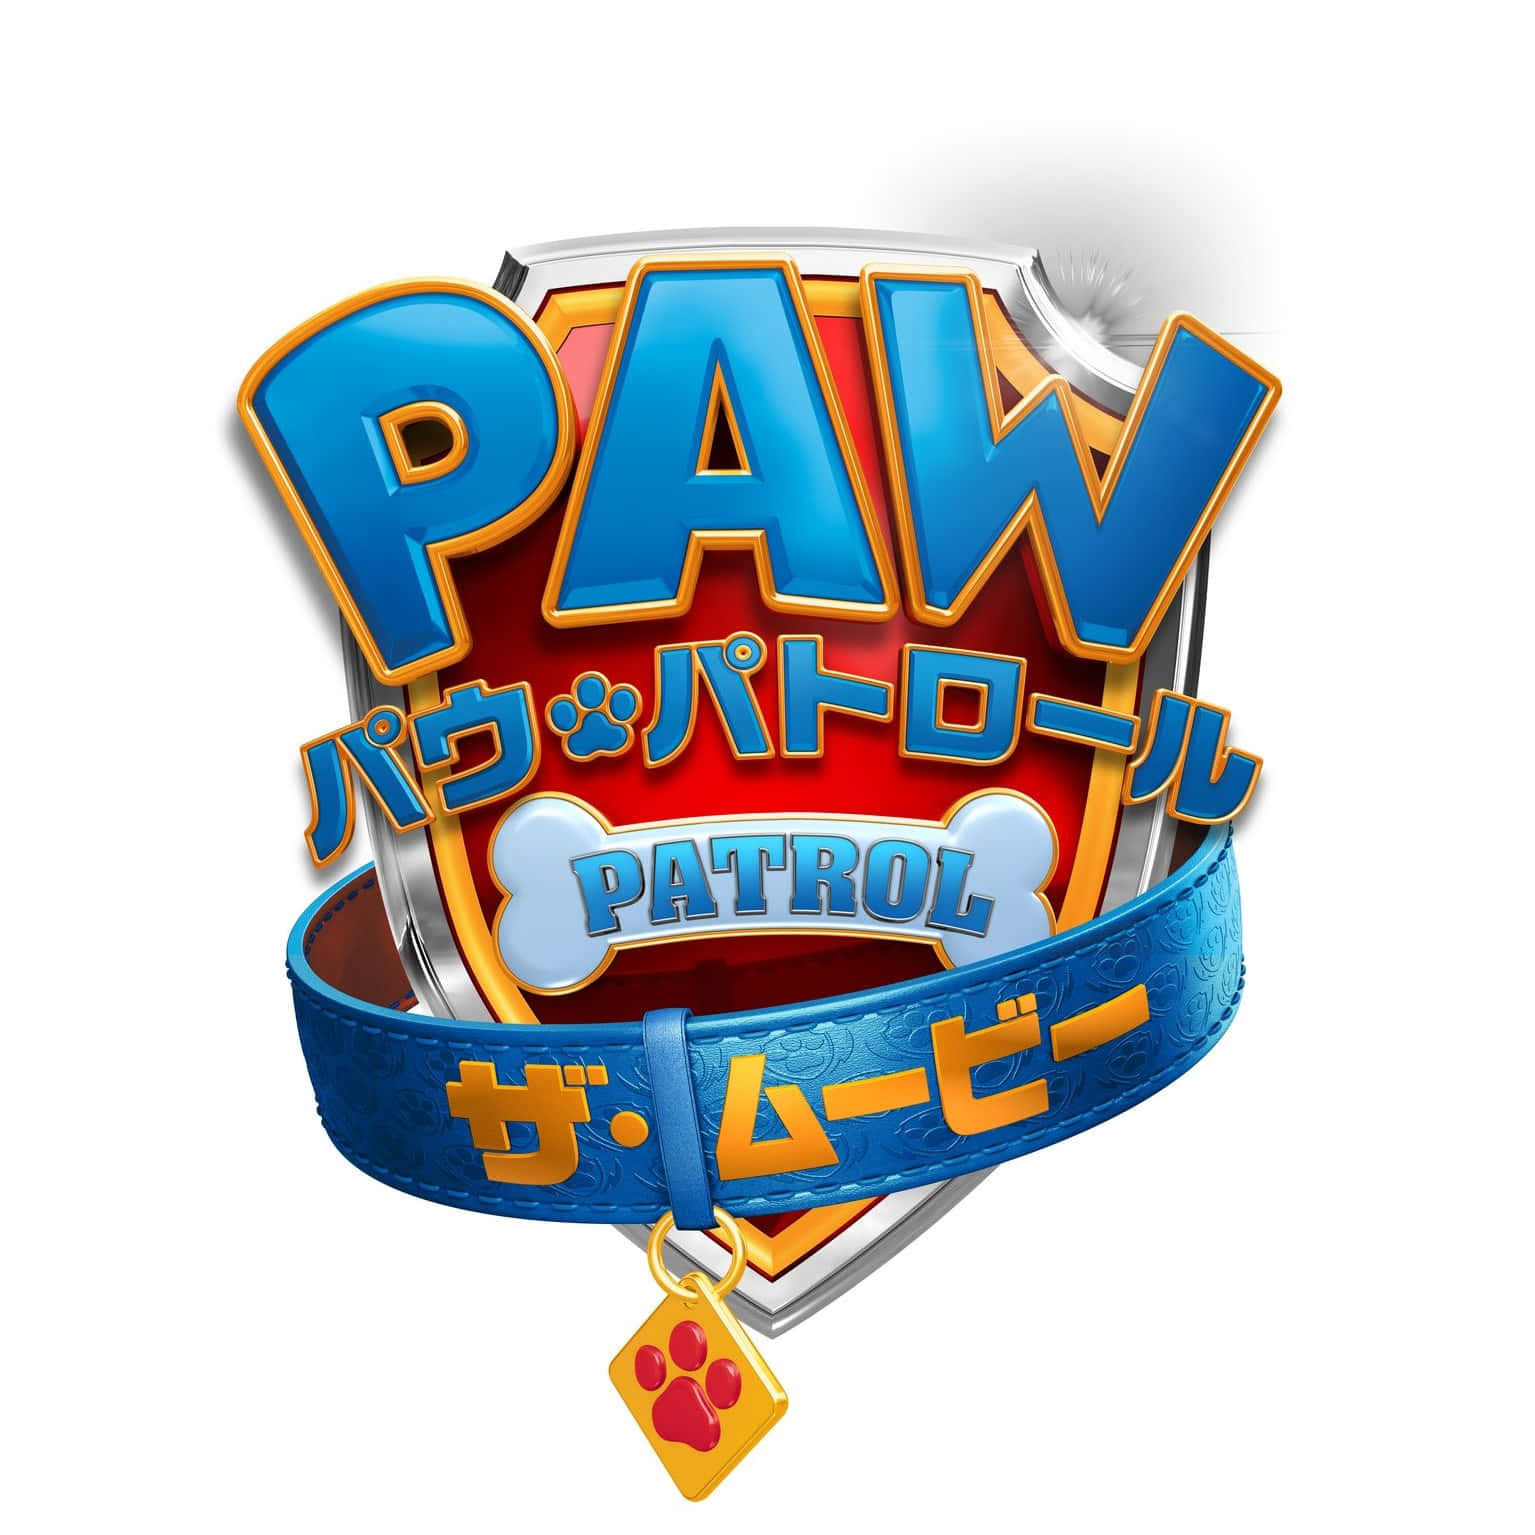 Pawpatrol-filmen Japanska Logotypen. Wallpaper